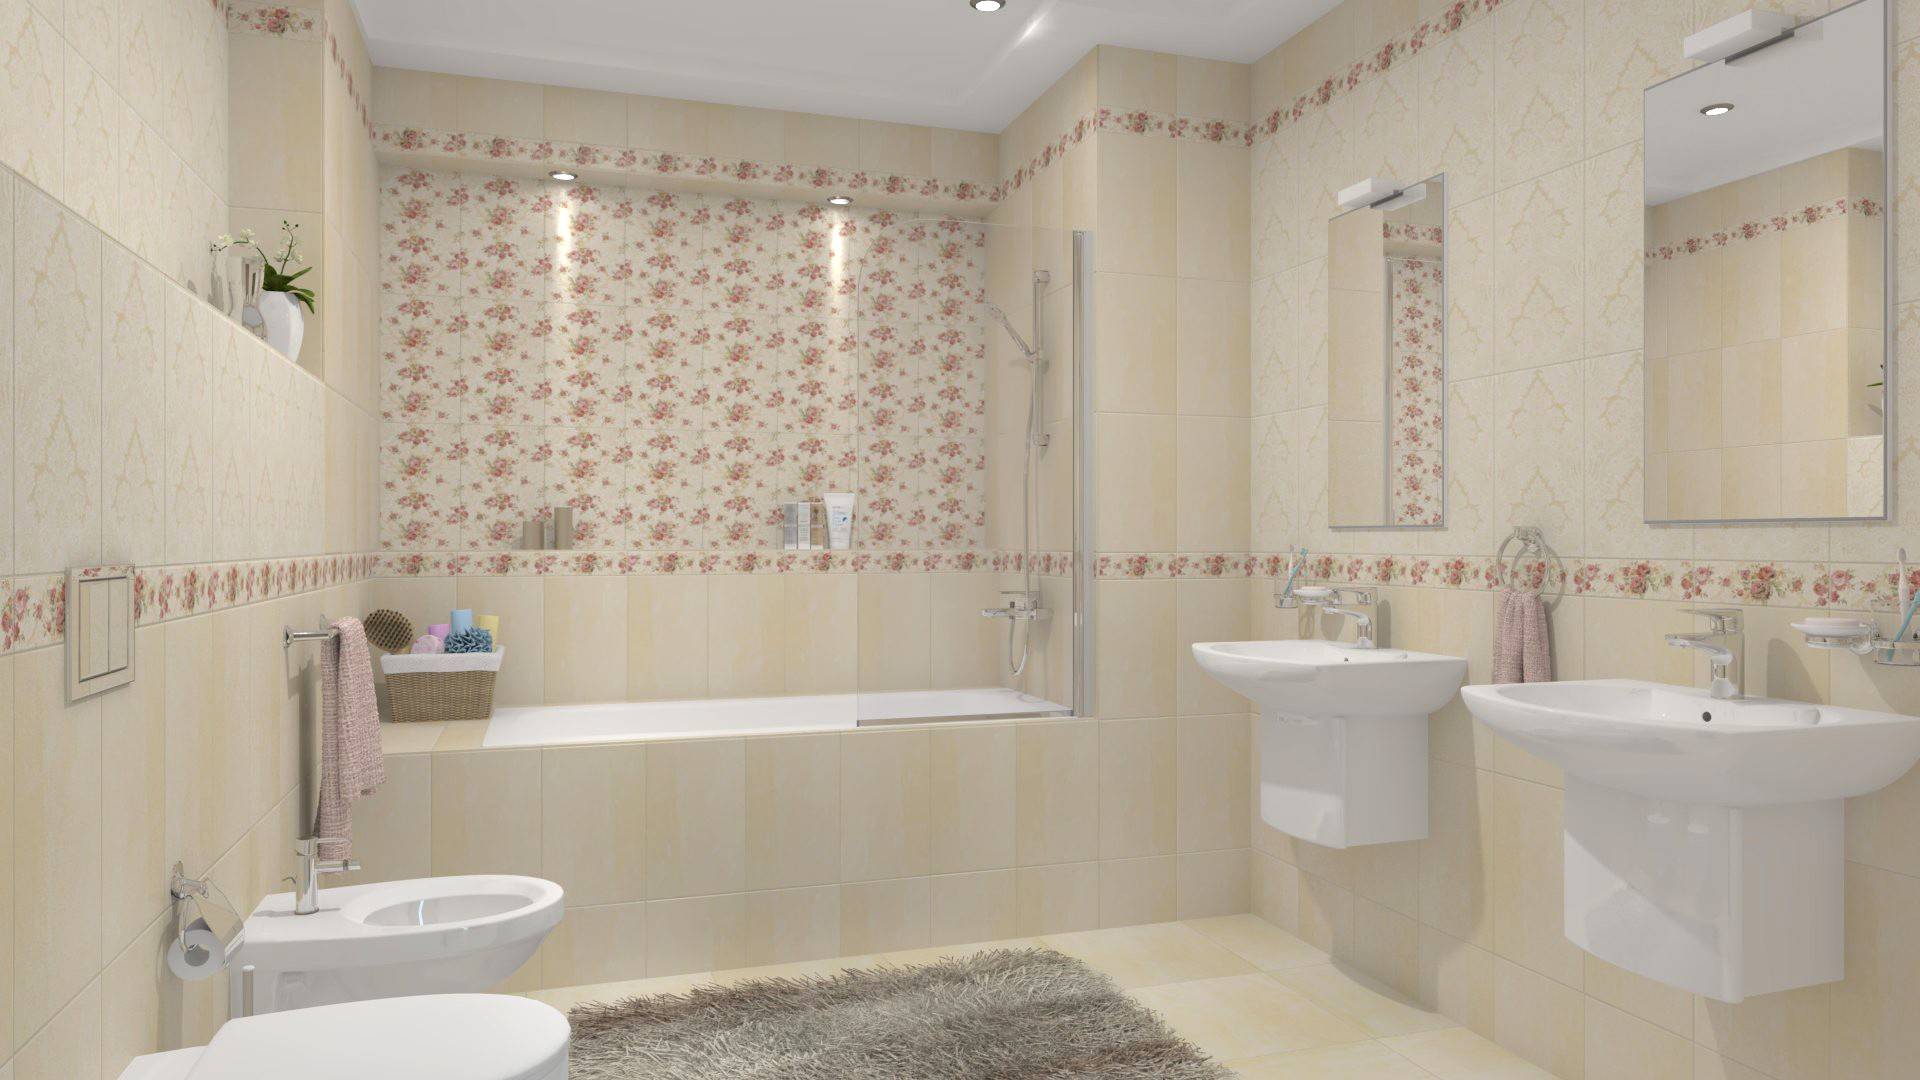 Шахтинская плитка в интерьере ванной комнаты фото. стильная плитка для ванной комнаты: дизайн и смелые решения (85 фото)